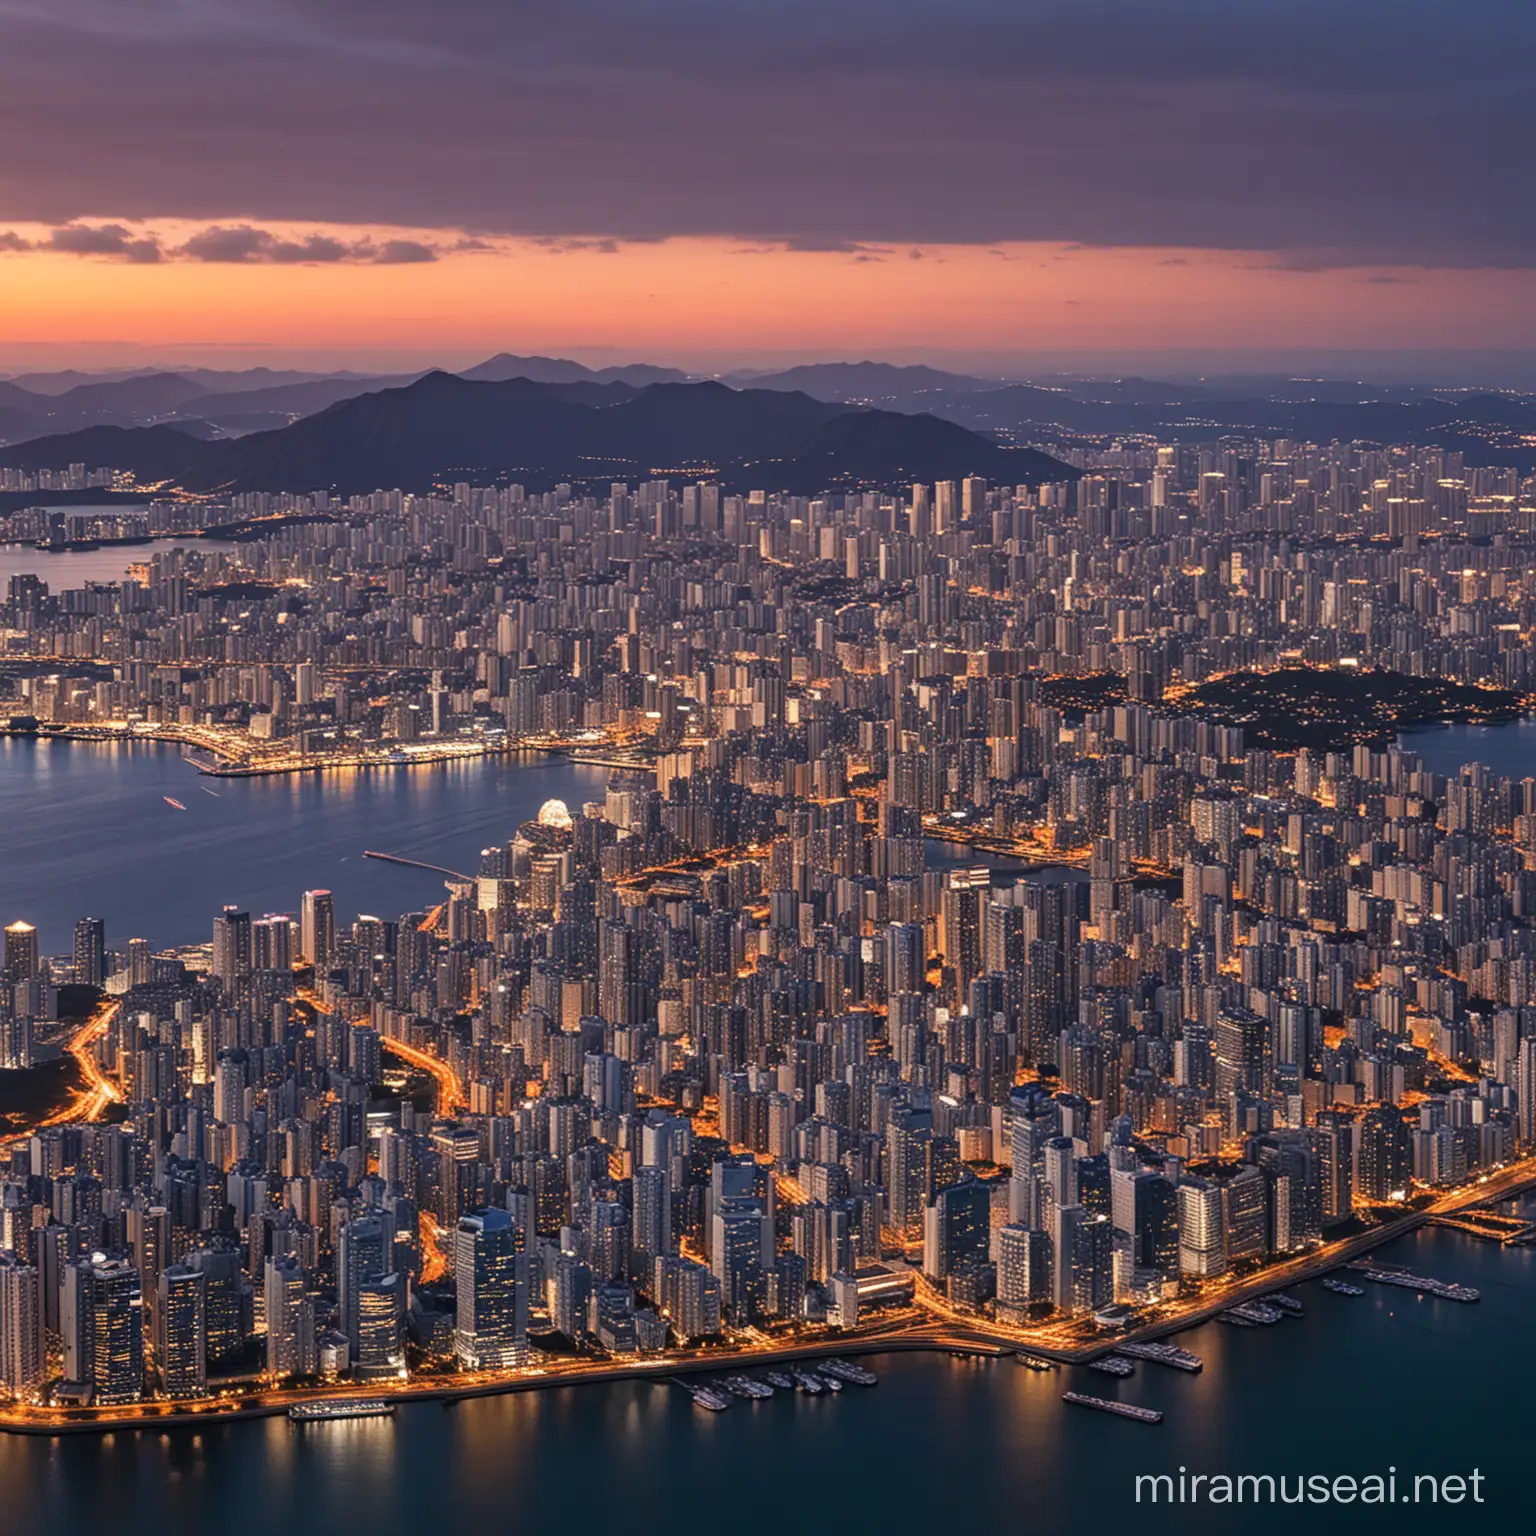 沿海城市，人口大约2000万，市中心有数百栋现代化高楼，城市包围着一片海湾，城市规划类似东京，海湾东边全是现代化高楼，黄昏，市中心